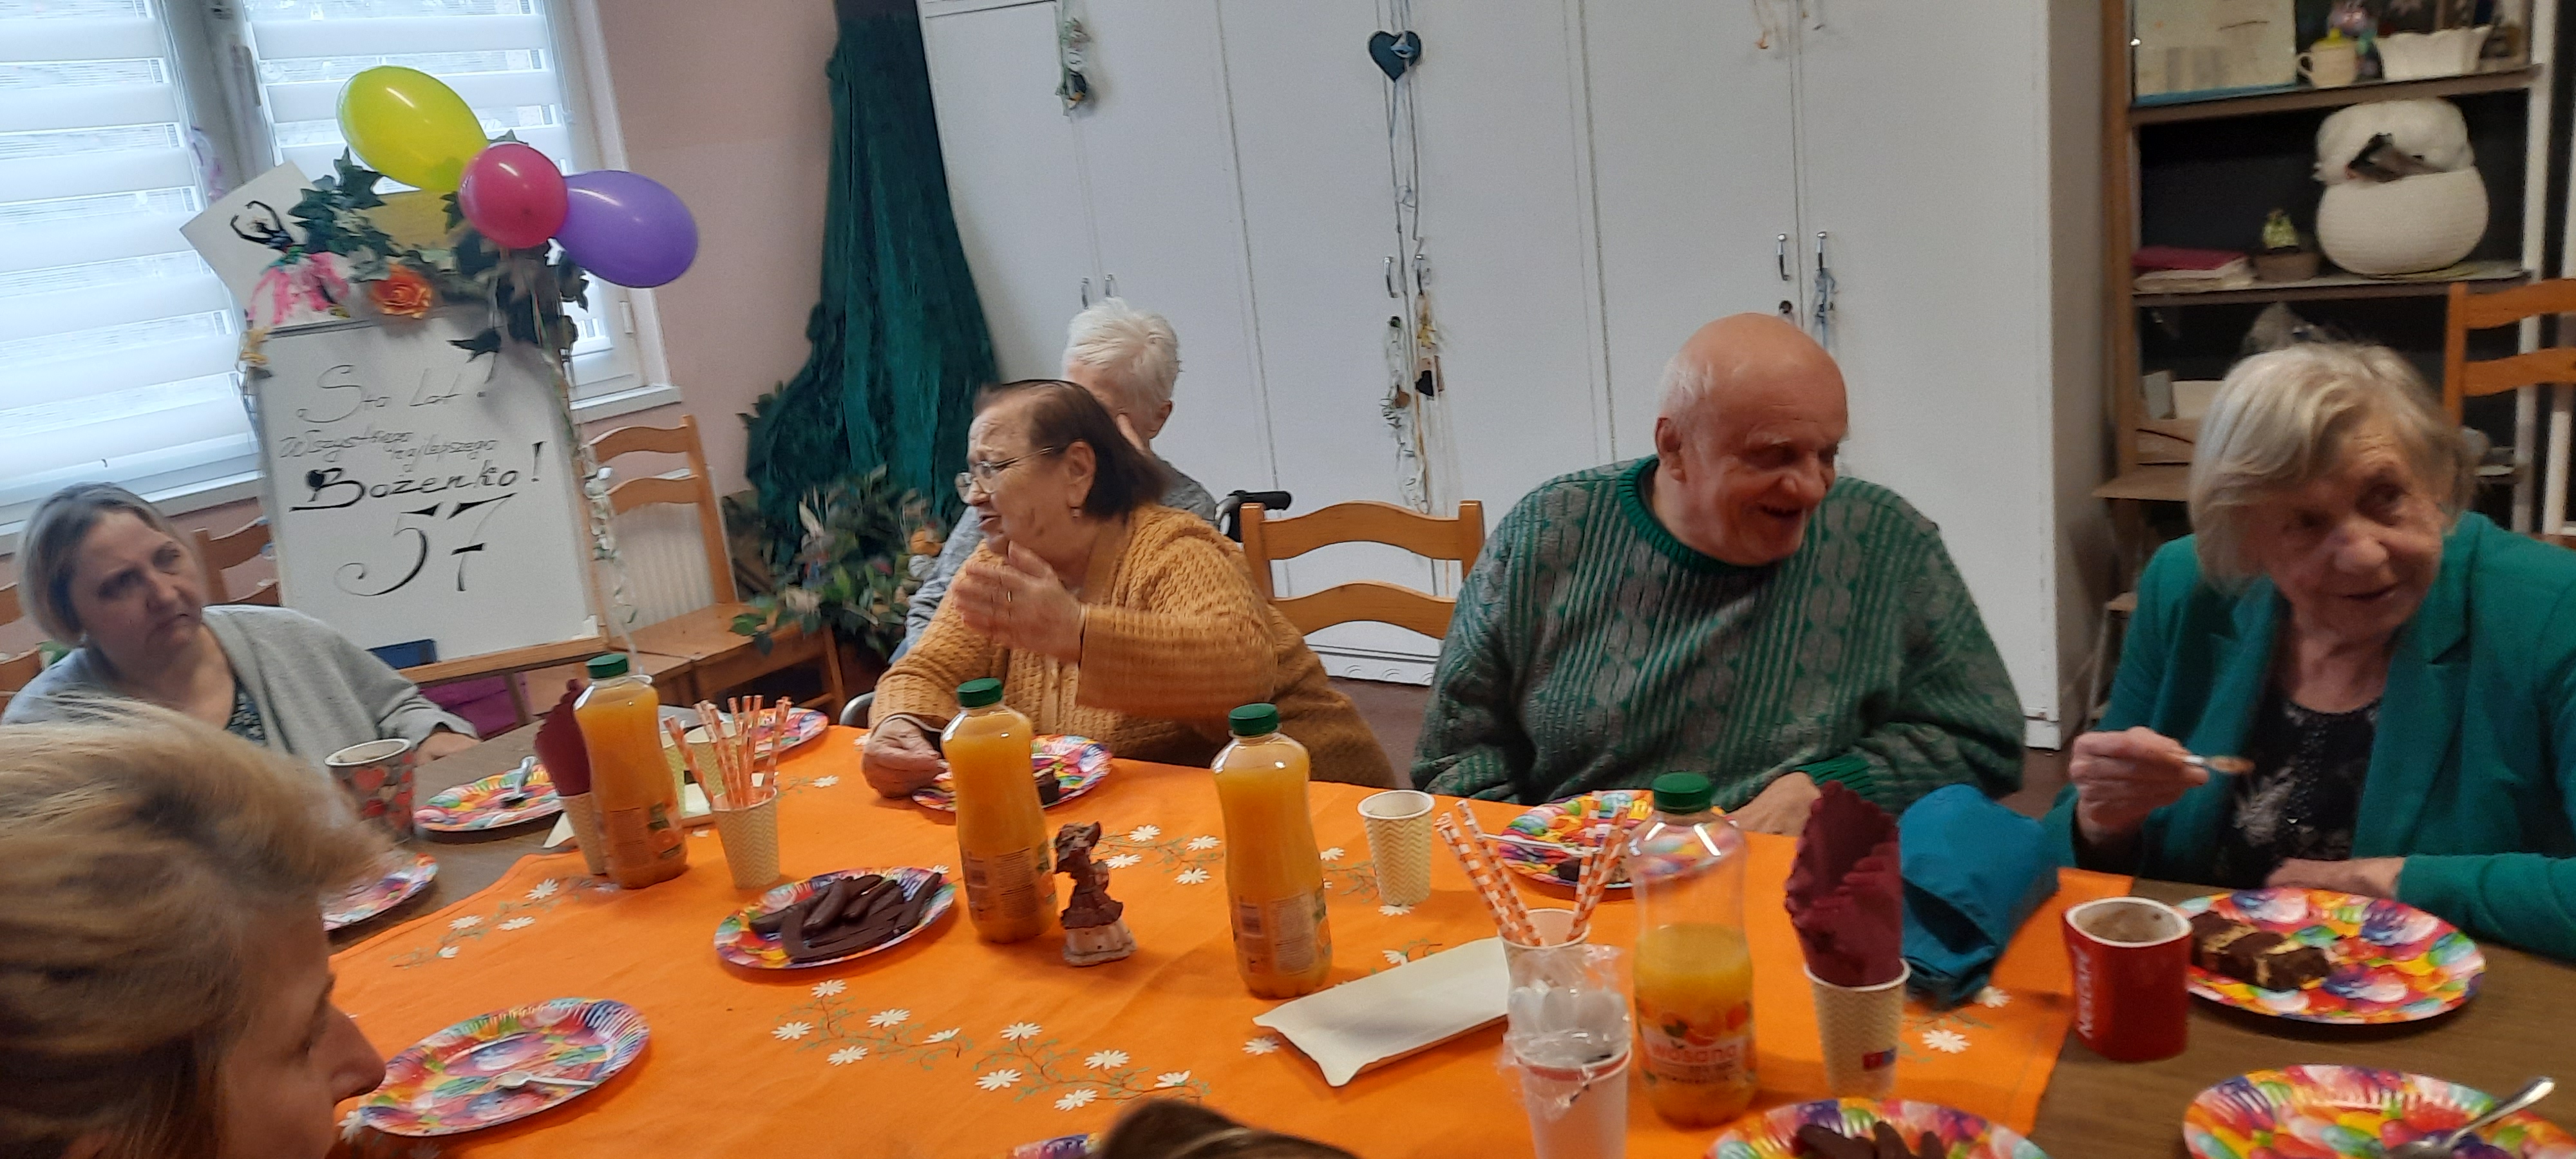 Grupa seniorów siedzi przy stole, rozmawia oraz je tort